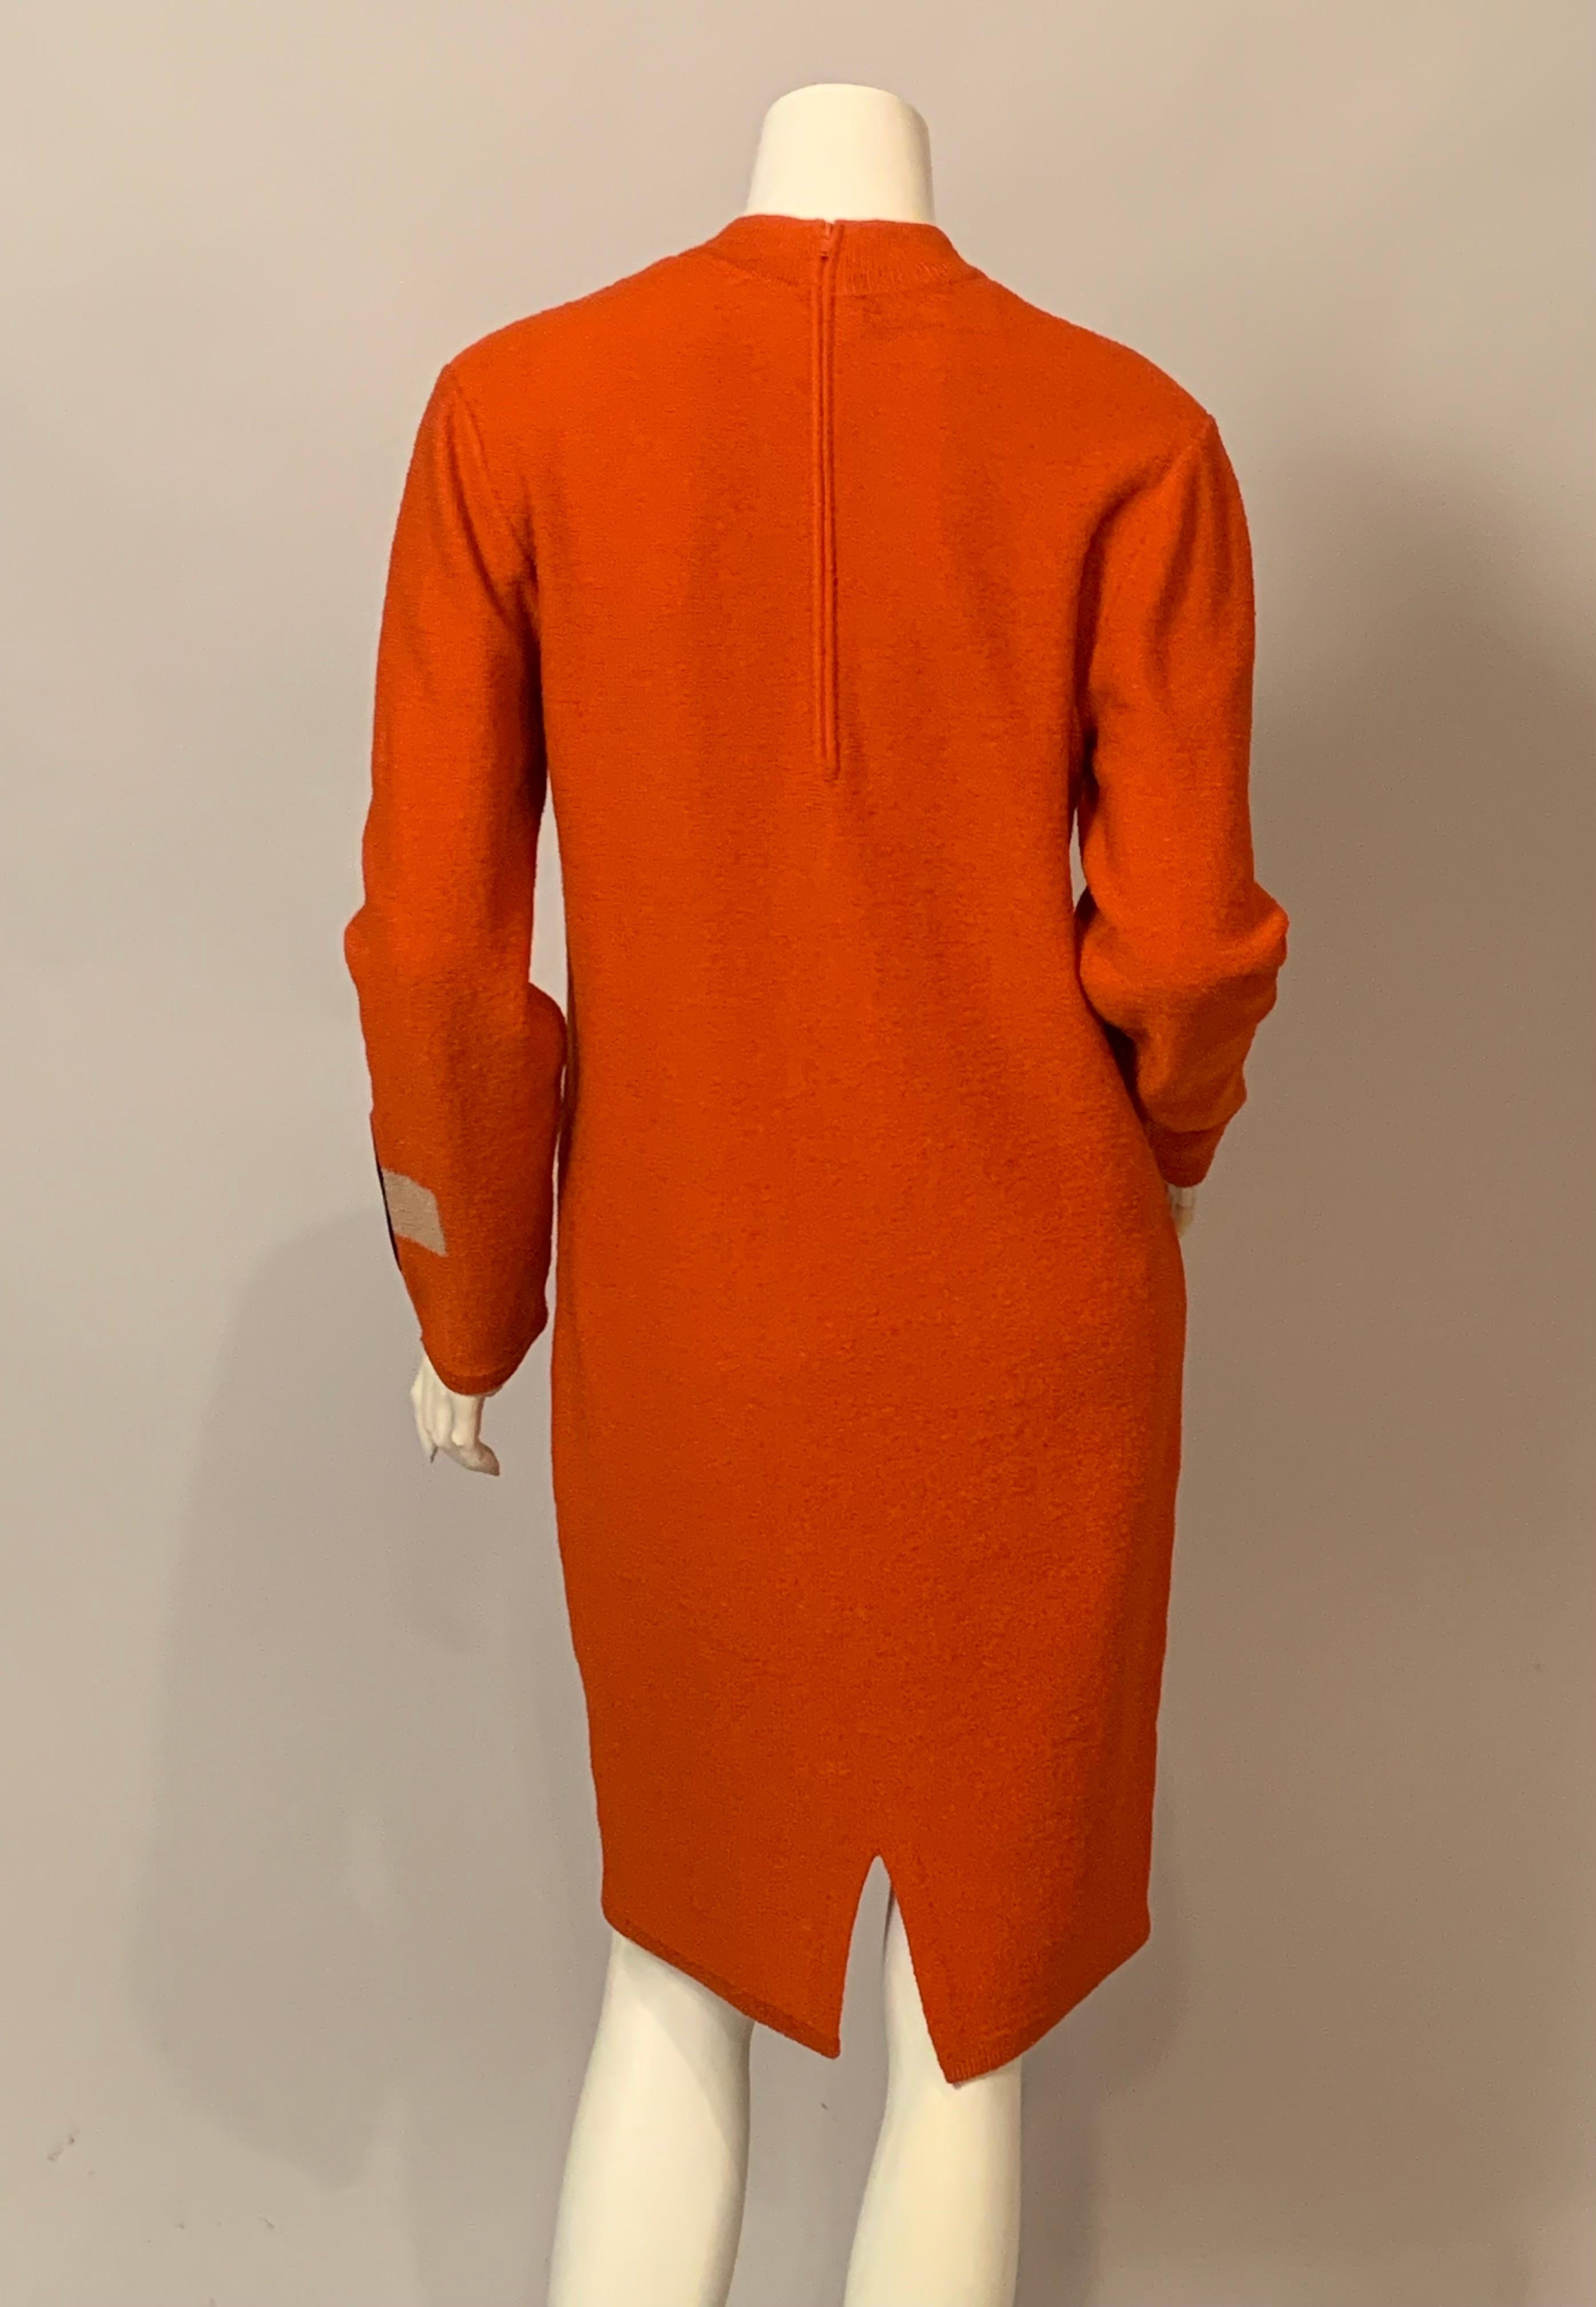 Women's Steve Fabrikant Modernist Inspired Orange Knit Dress